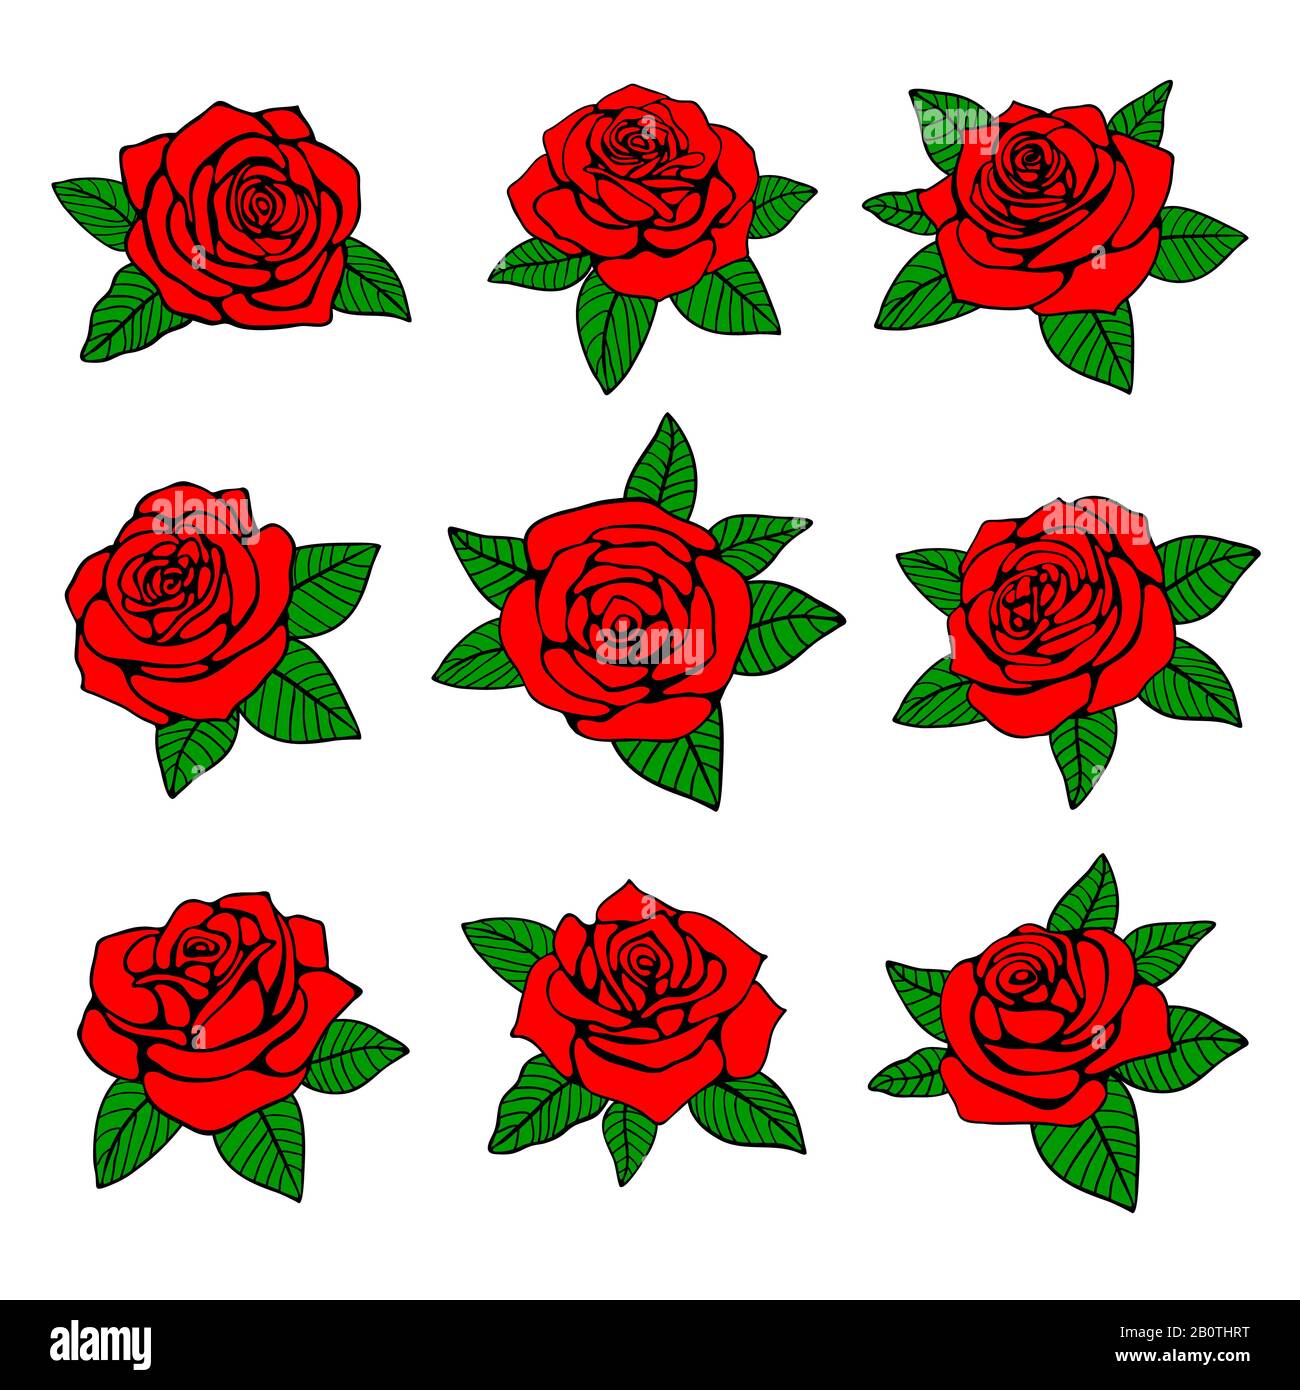 Rote Rosen mit grünen Blättern, Vektordesign für Tätowierung. Rote Rose in der Natur, mit grünem Blatt, Illustration von Rosentattoo Stock Vektor